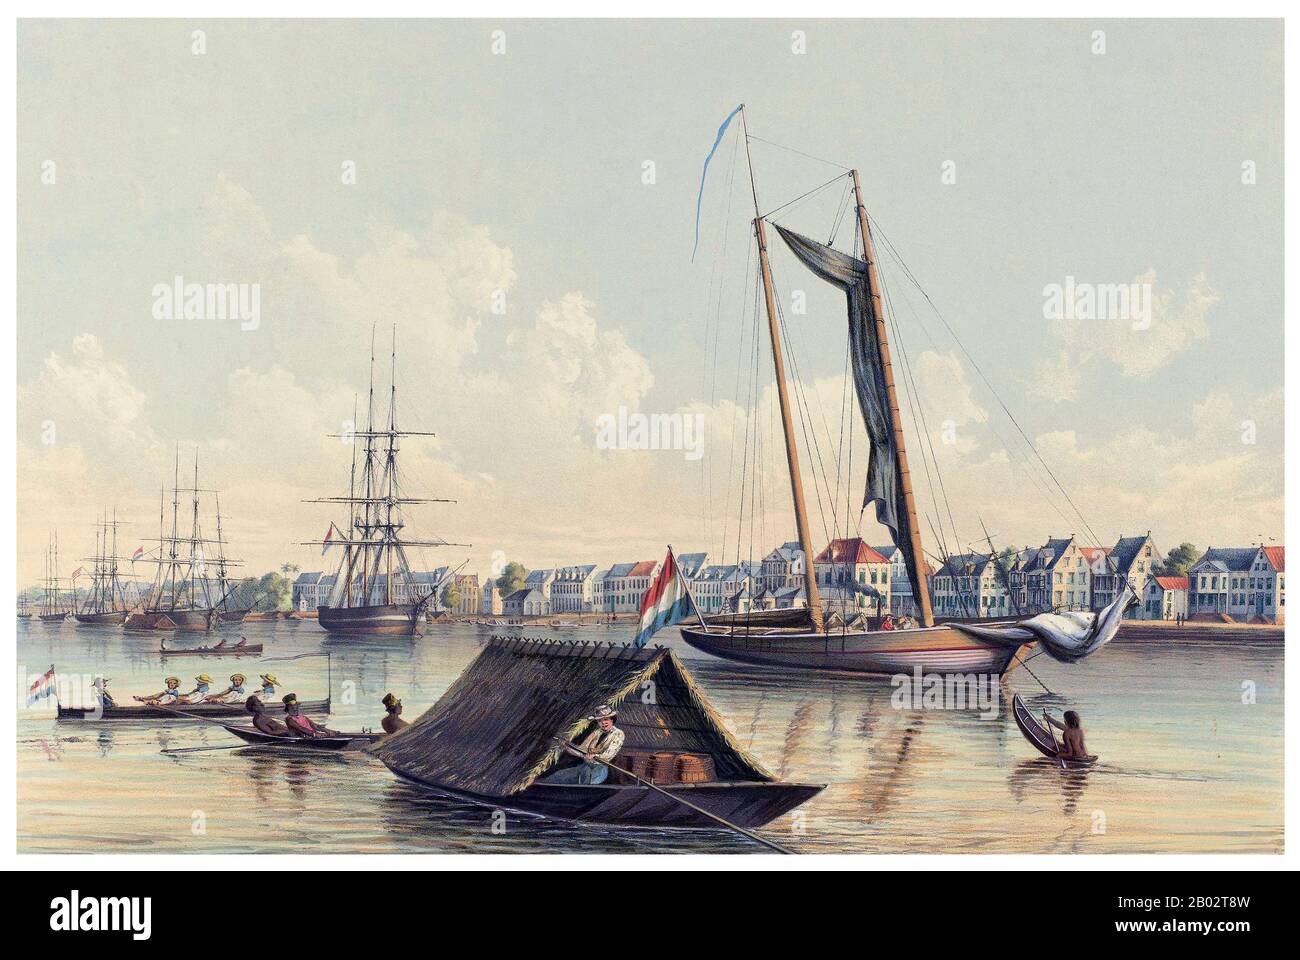 El país más pequeño de América del Sur, la diversidad de Suriname comenzó en el siglo XVI cuando exploradores franceses, españoles e ingleses visitaron la zona. Un siglo más tarde, las colonias de plantaciones fueron establecidas por los holandeses y los ingleses a lo largo de los numerosos ríos en las fértiles llanuras de Guyana. Como siempre, surgieron disputas entre los holandeses y los ingleses. En 1667, los holandeses decidieron mantener la incipiente colonia de plantaciones de Suriname de los ingleses, como resultado del Tratado de Breda. Los ingleses quedaron con Nueva Amsterdam, un pequeño puesto comercial en Norteamérica, que más tarde se convirtió en la ciudad de Nueva York. Como plantación Foto de stock